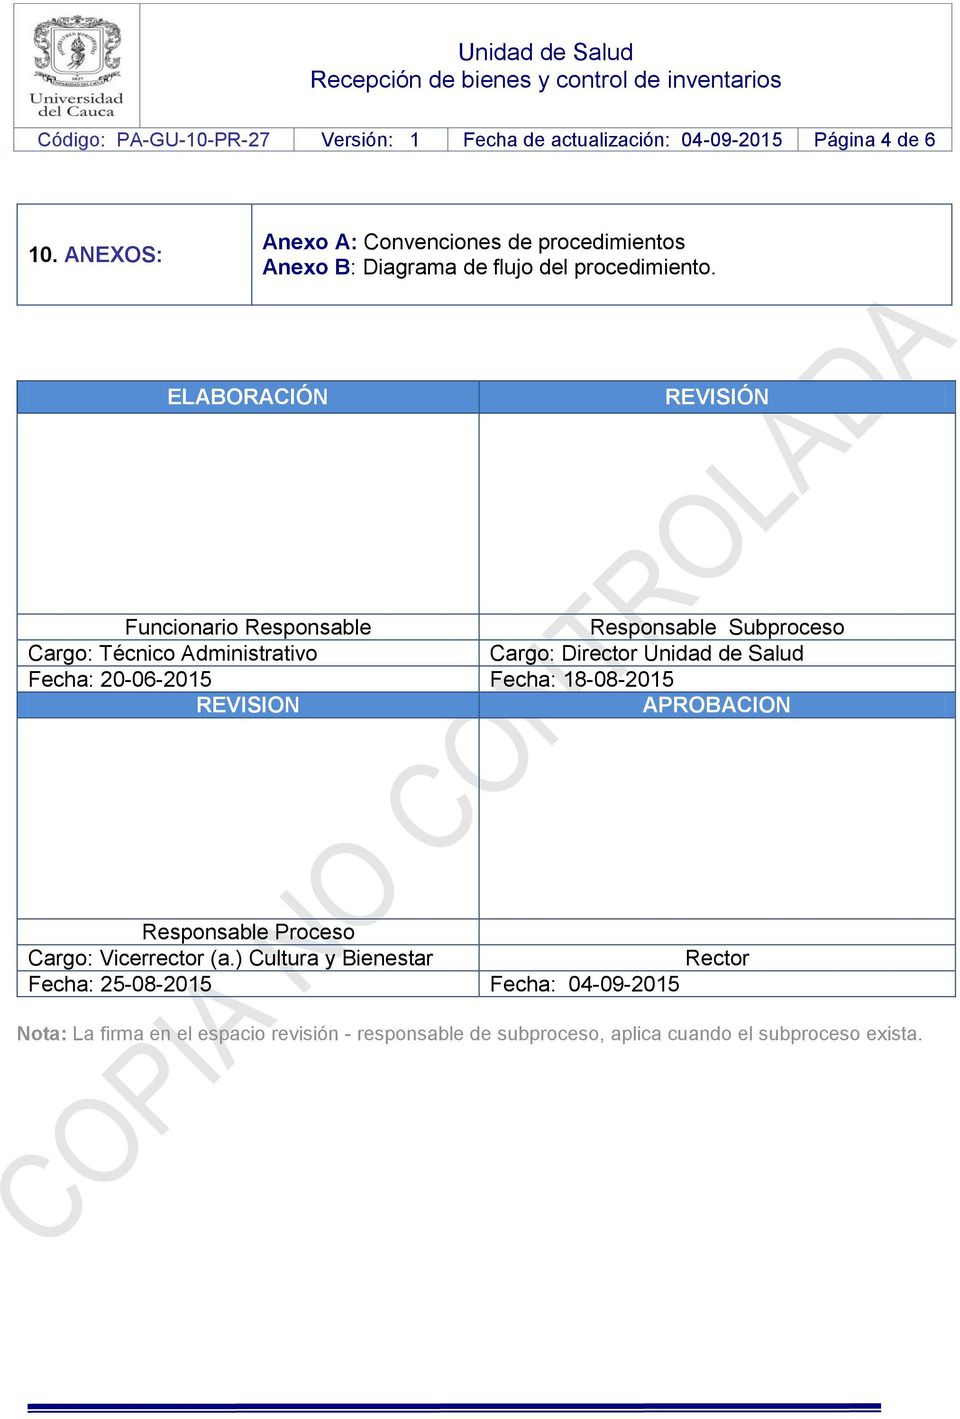 ELABORACIÓN REVISIÓN Funcionario Responsable Responsable Subproceso Cargo: Cargo: Director Unidad de Salud Fecha: 20-06-2015 Fecha: